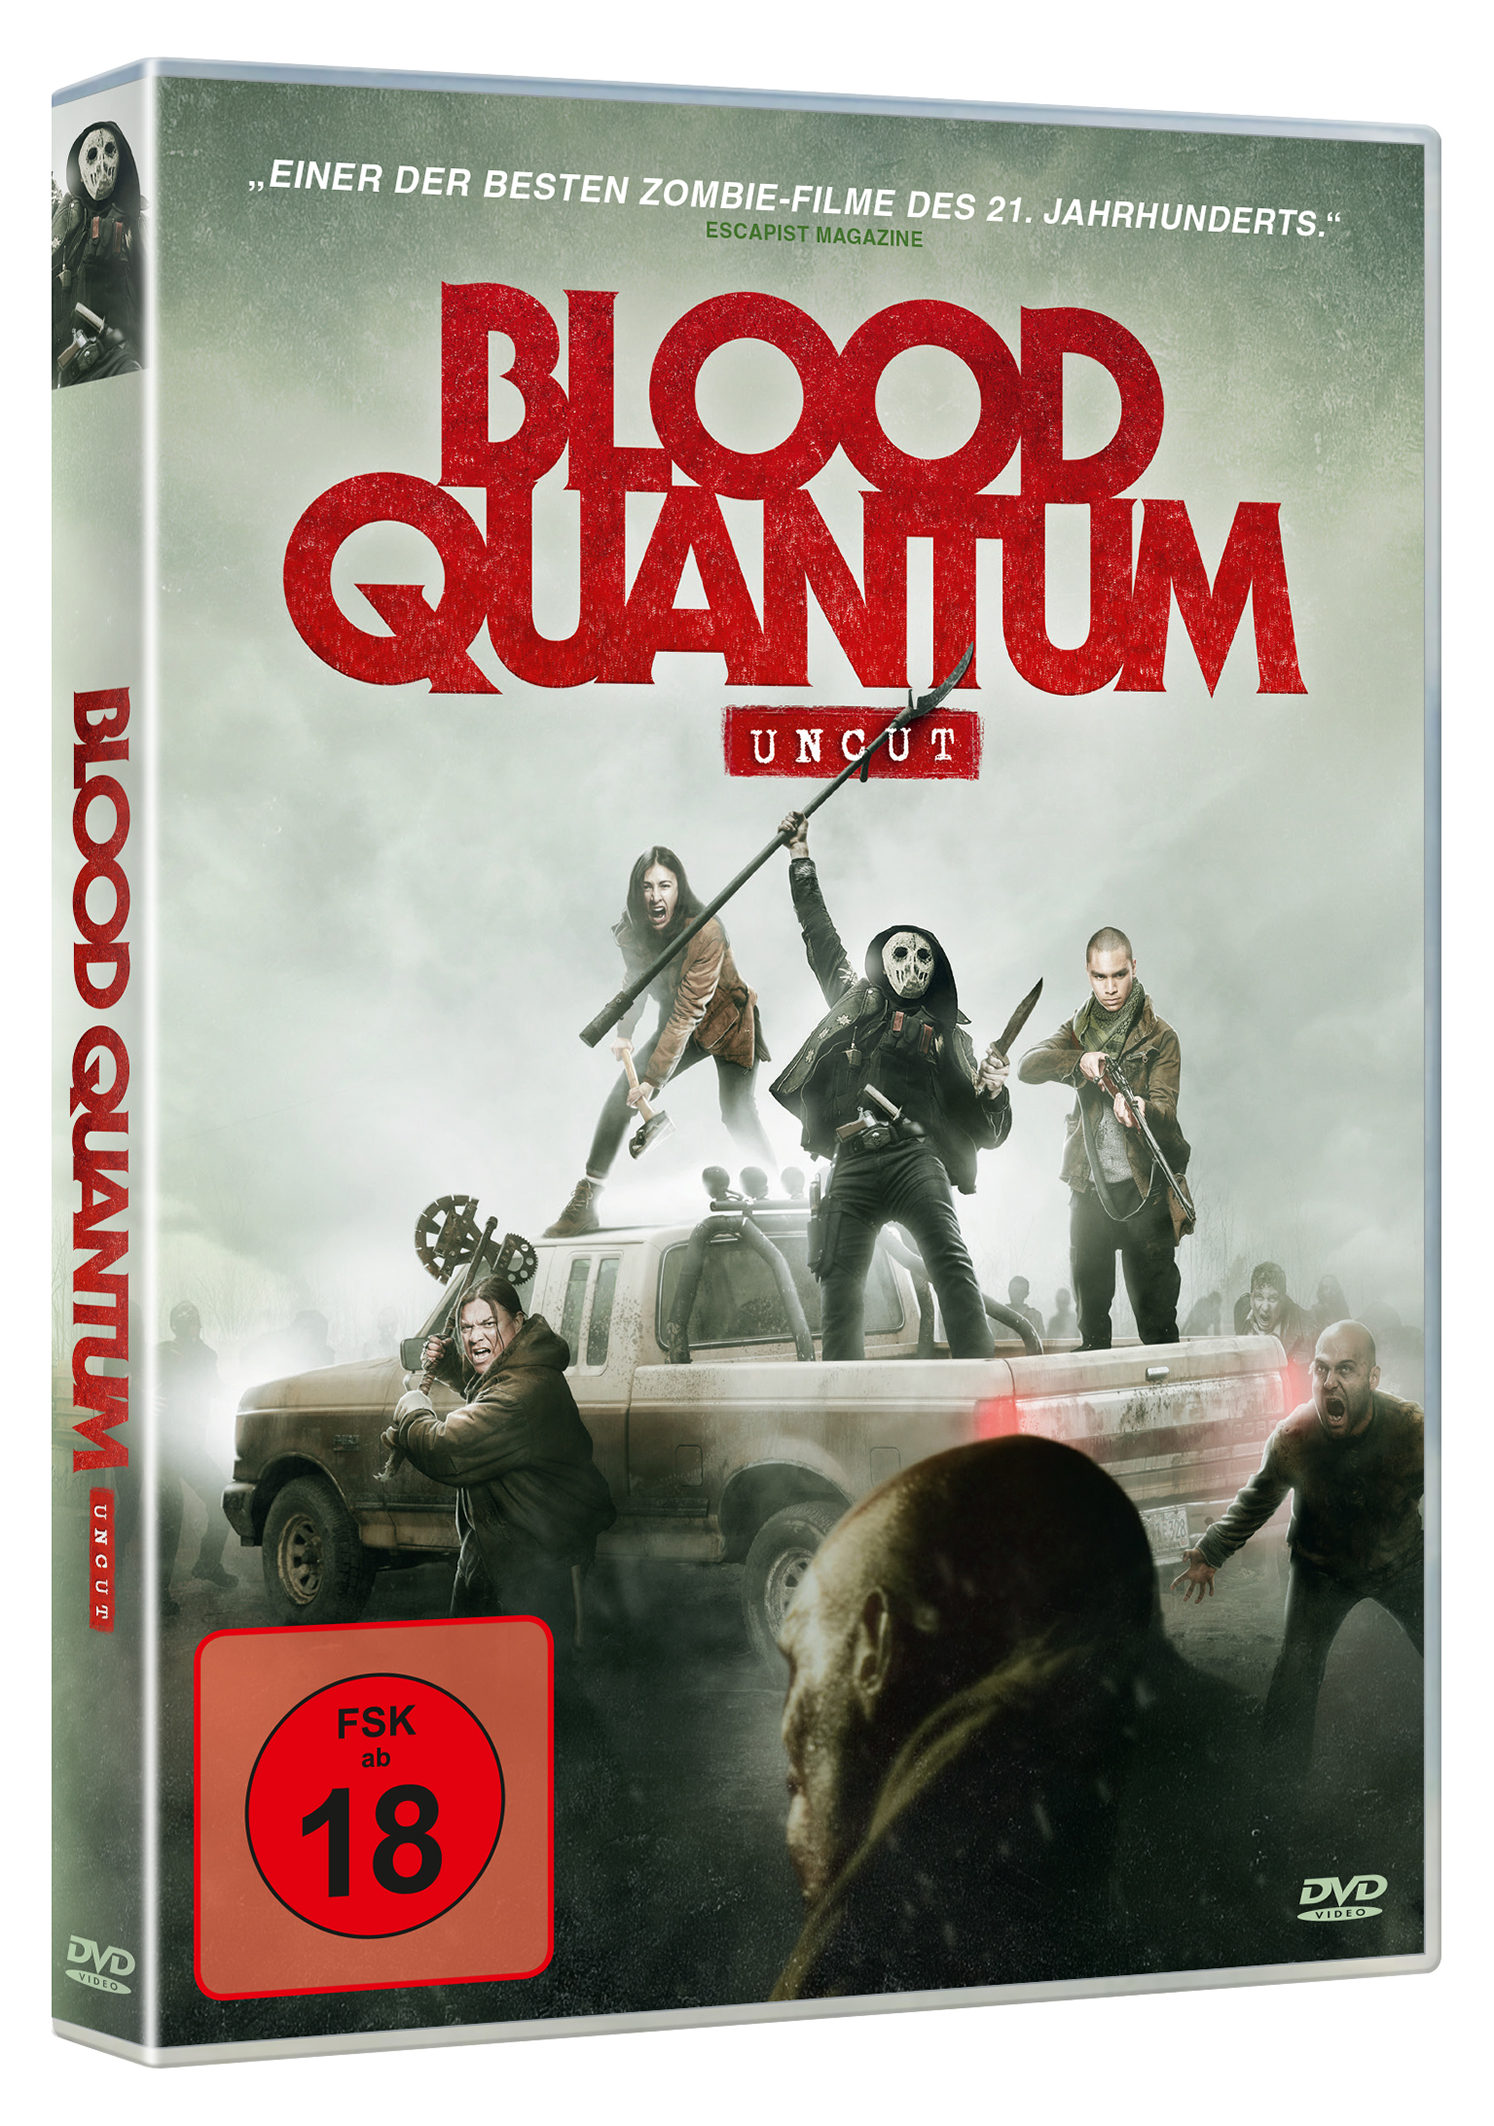 Blood Quantum (DVD) Image 2